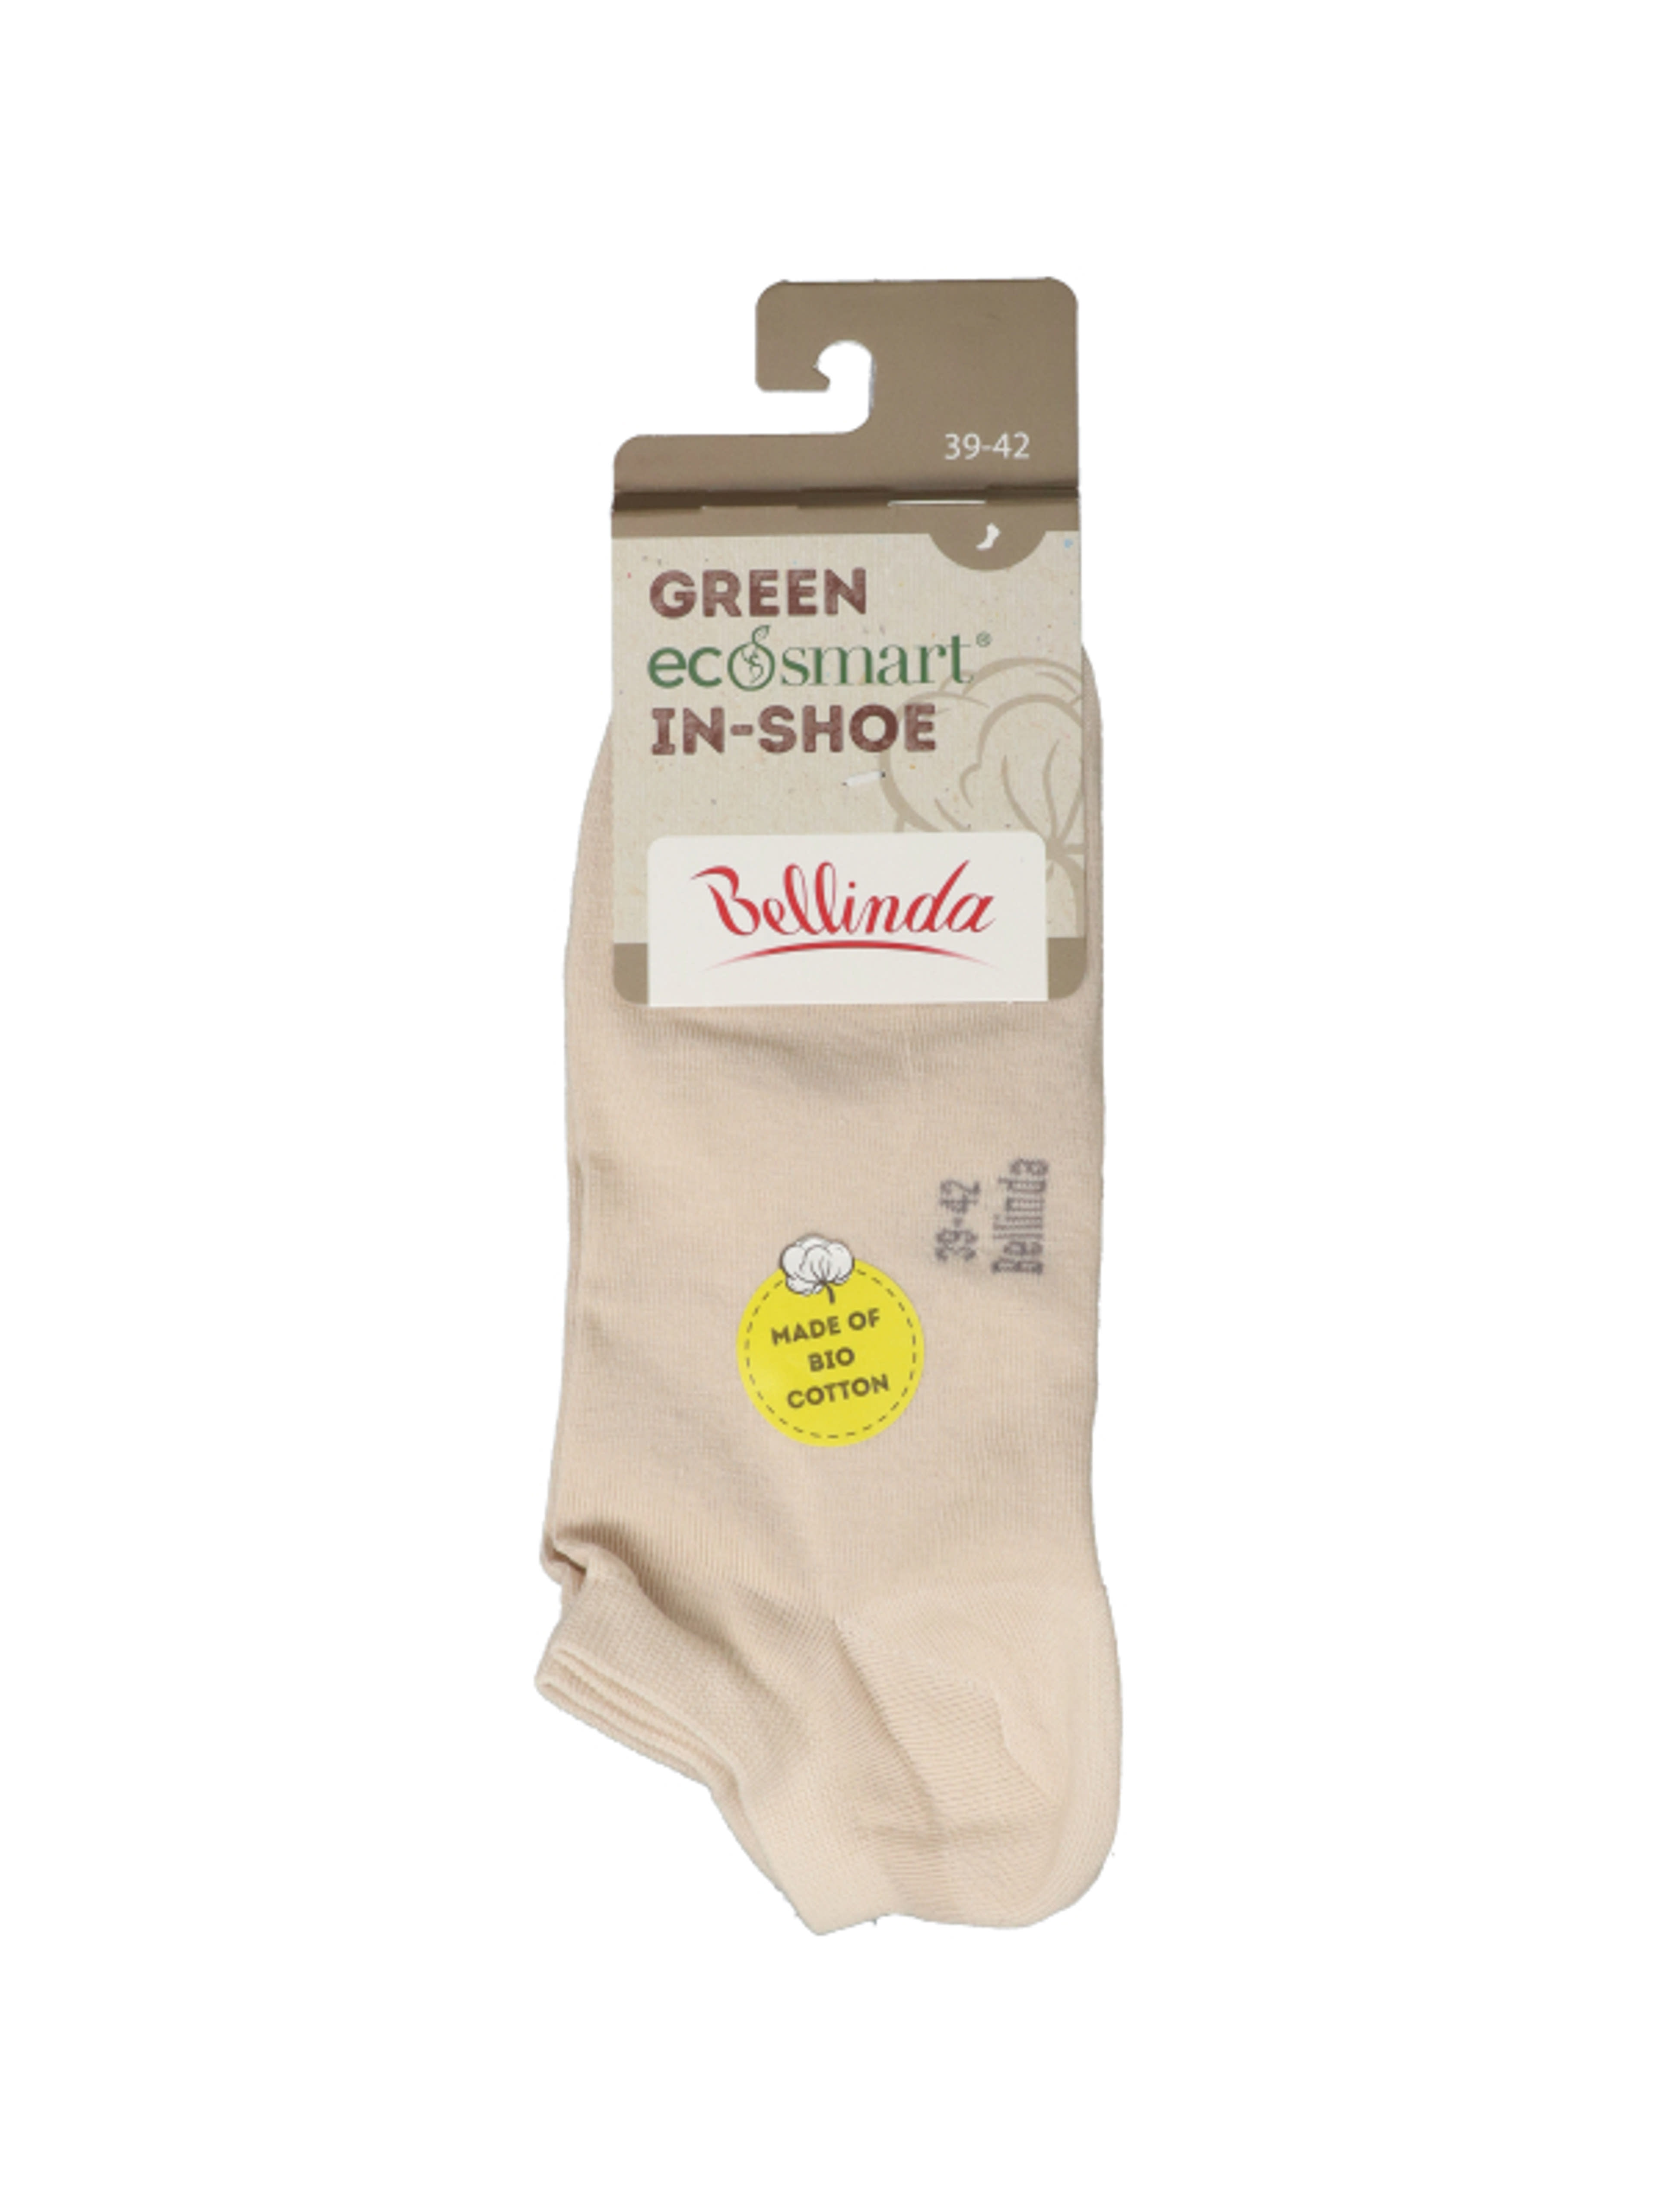 Bellinda Green Ecosmart In-Shoe női zokni, bézs, 39-42 - 1 pár-1